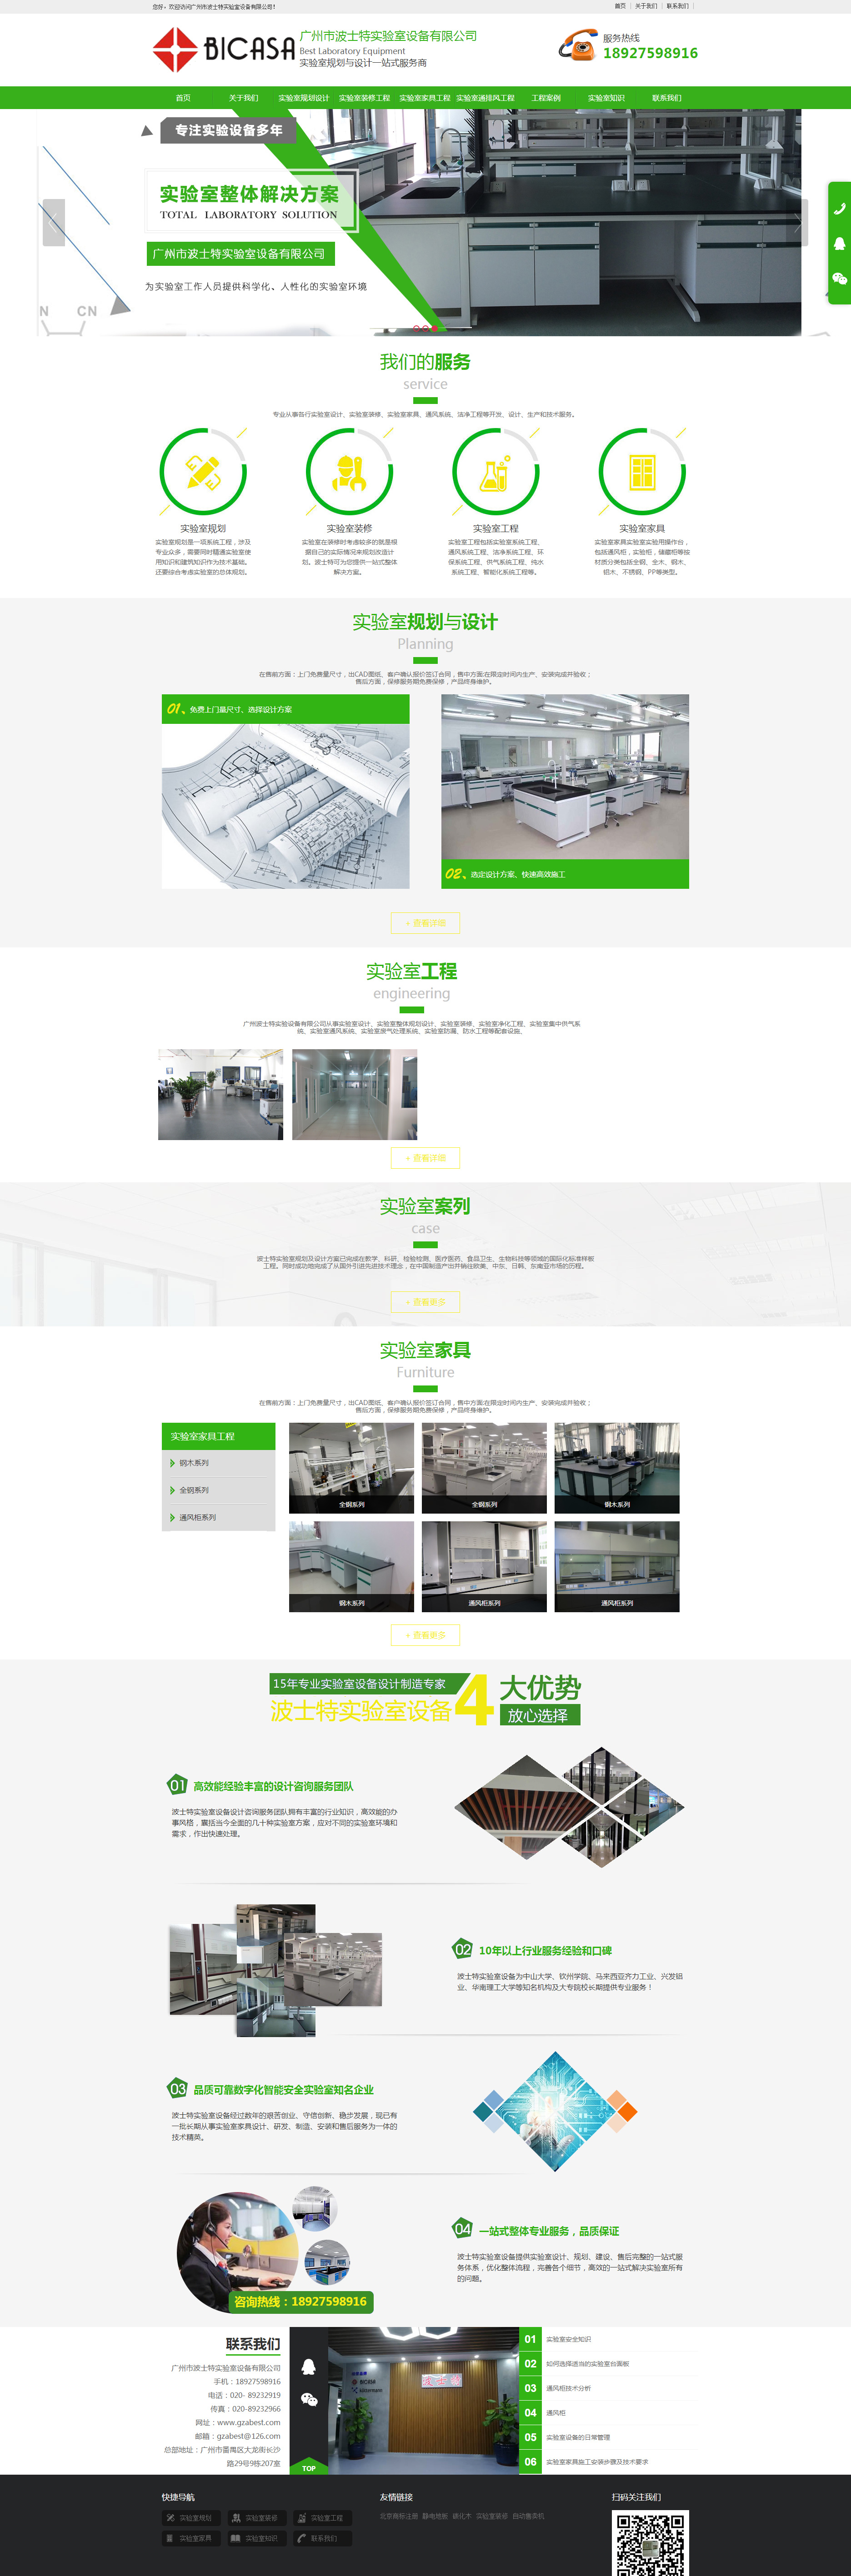 广州波士特实验室设备网站制作首页设计效果图